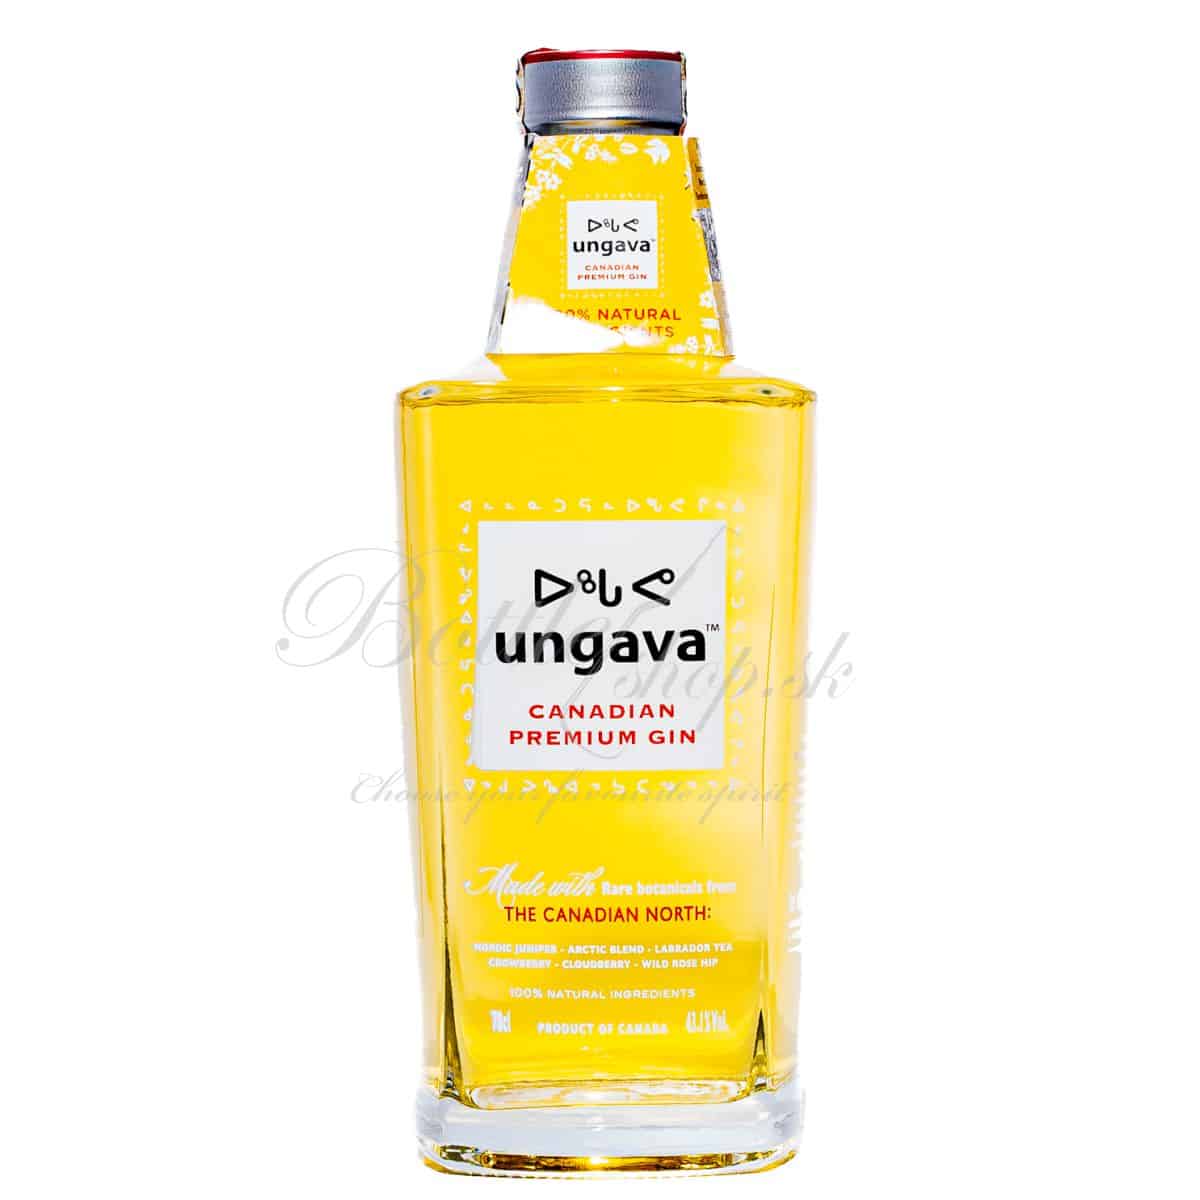 ungava canadian premium gin 0,7l